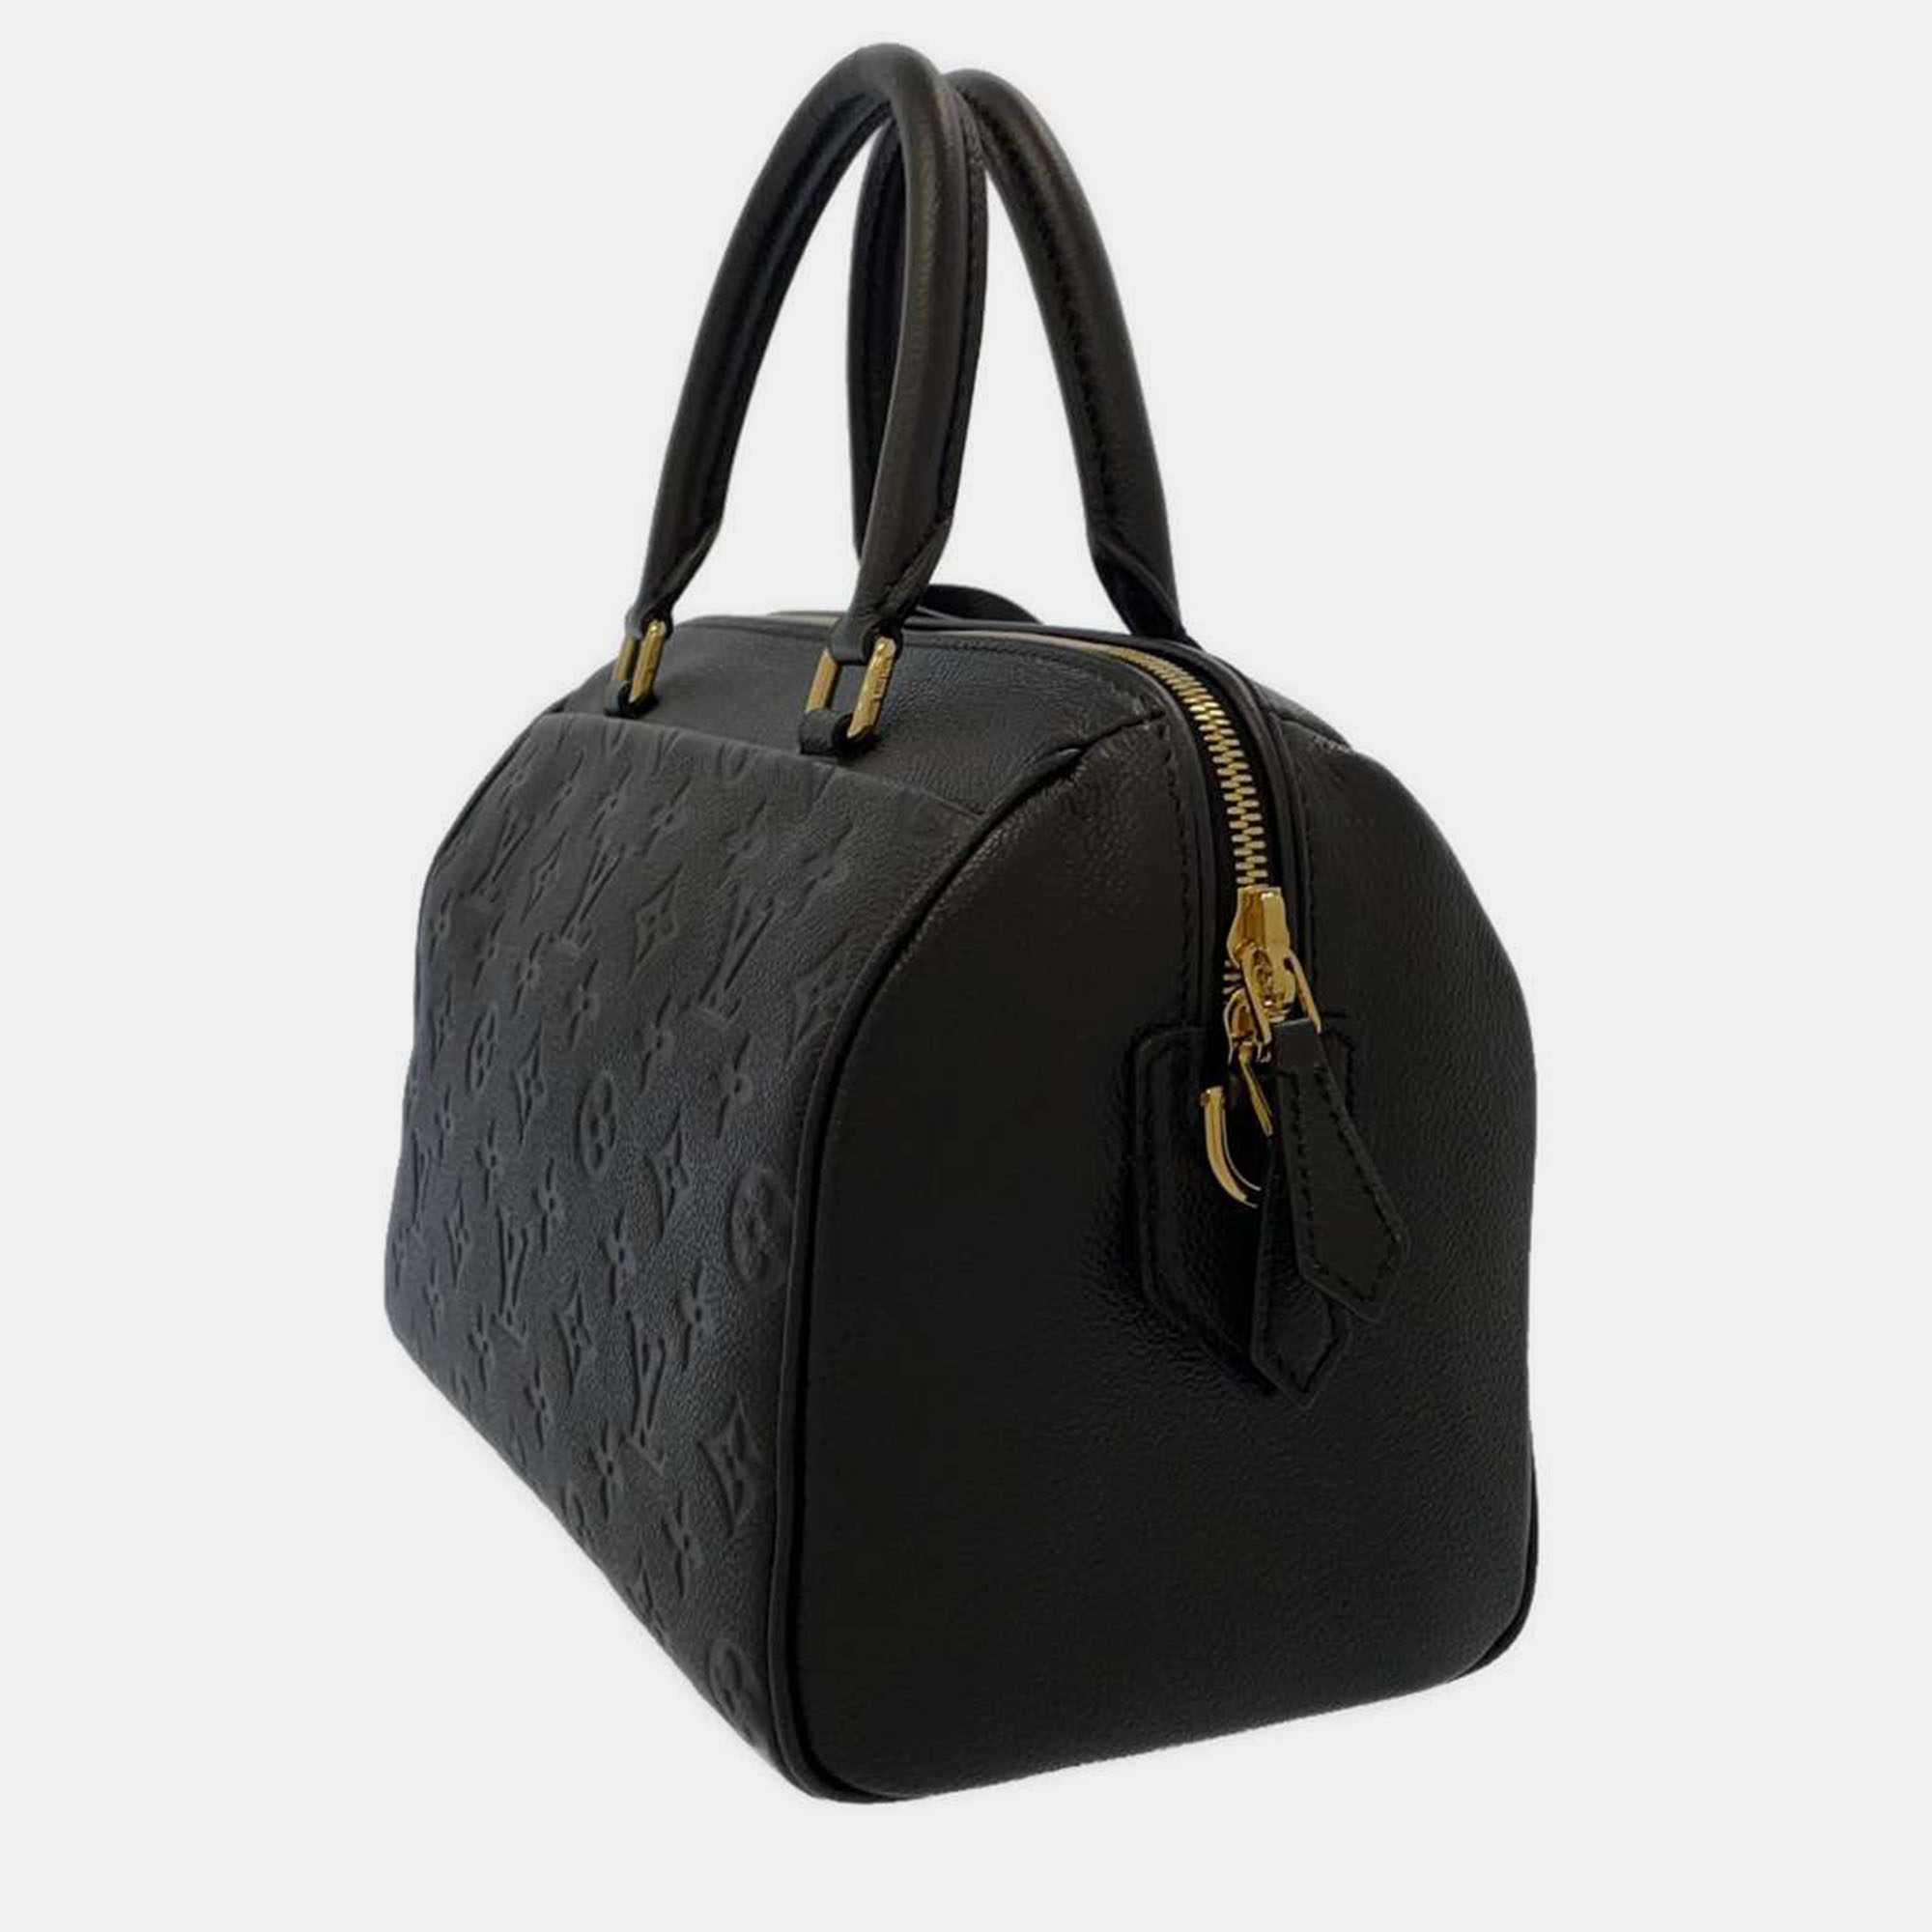 

Louis Vuitton Black Monogram Empreinte Leather Speedy Bandouliere 25 Satchel